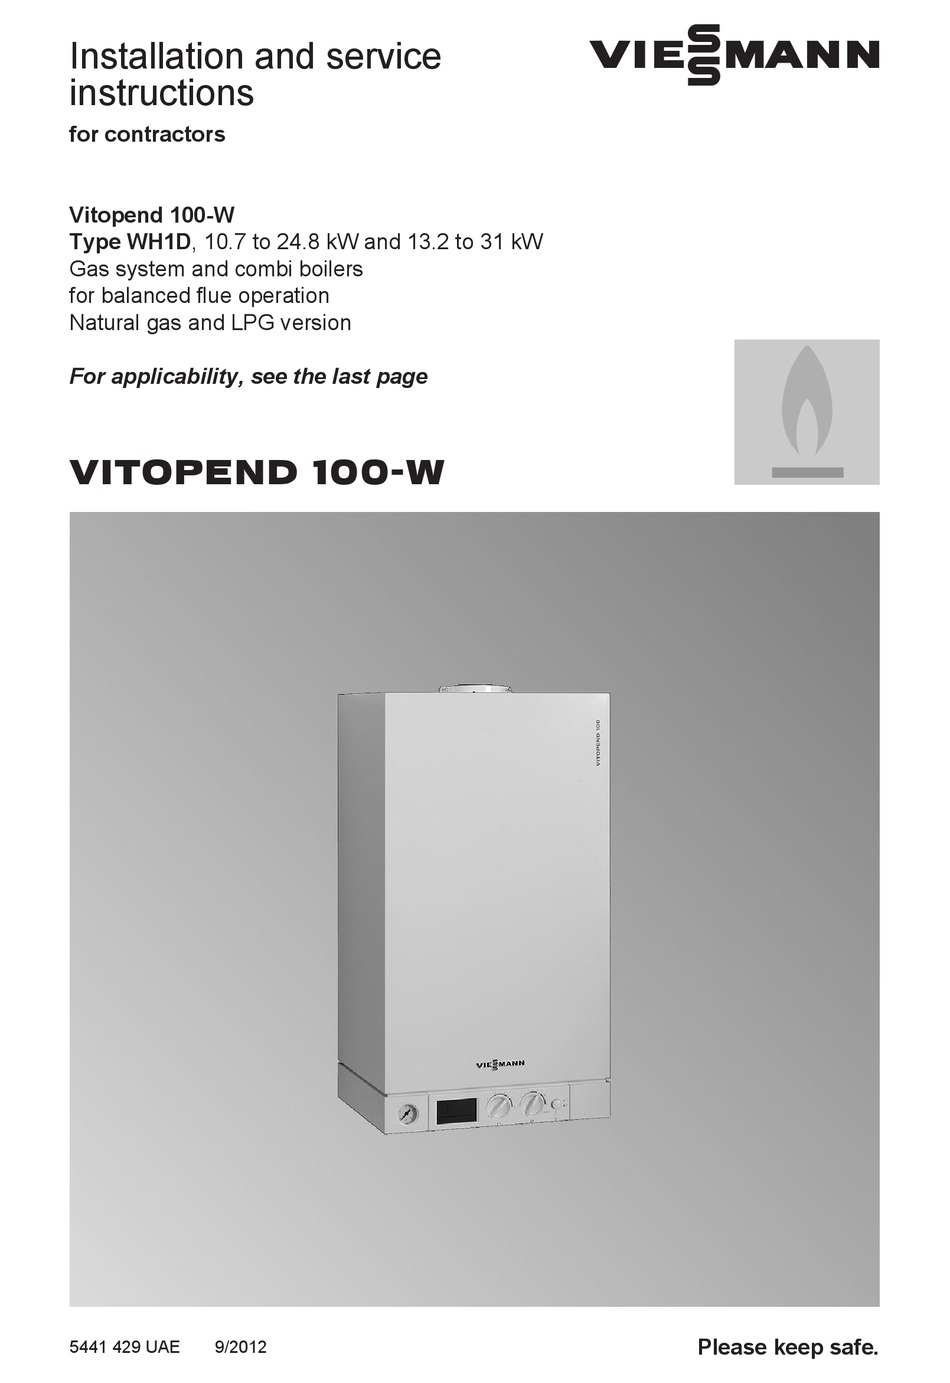 Viessmann Vitopend 100 W Installation